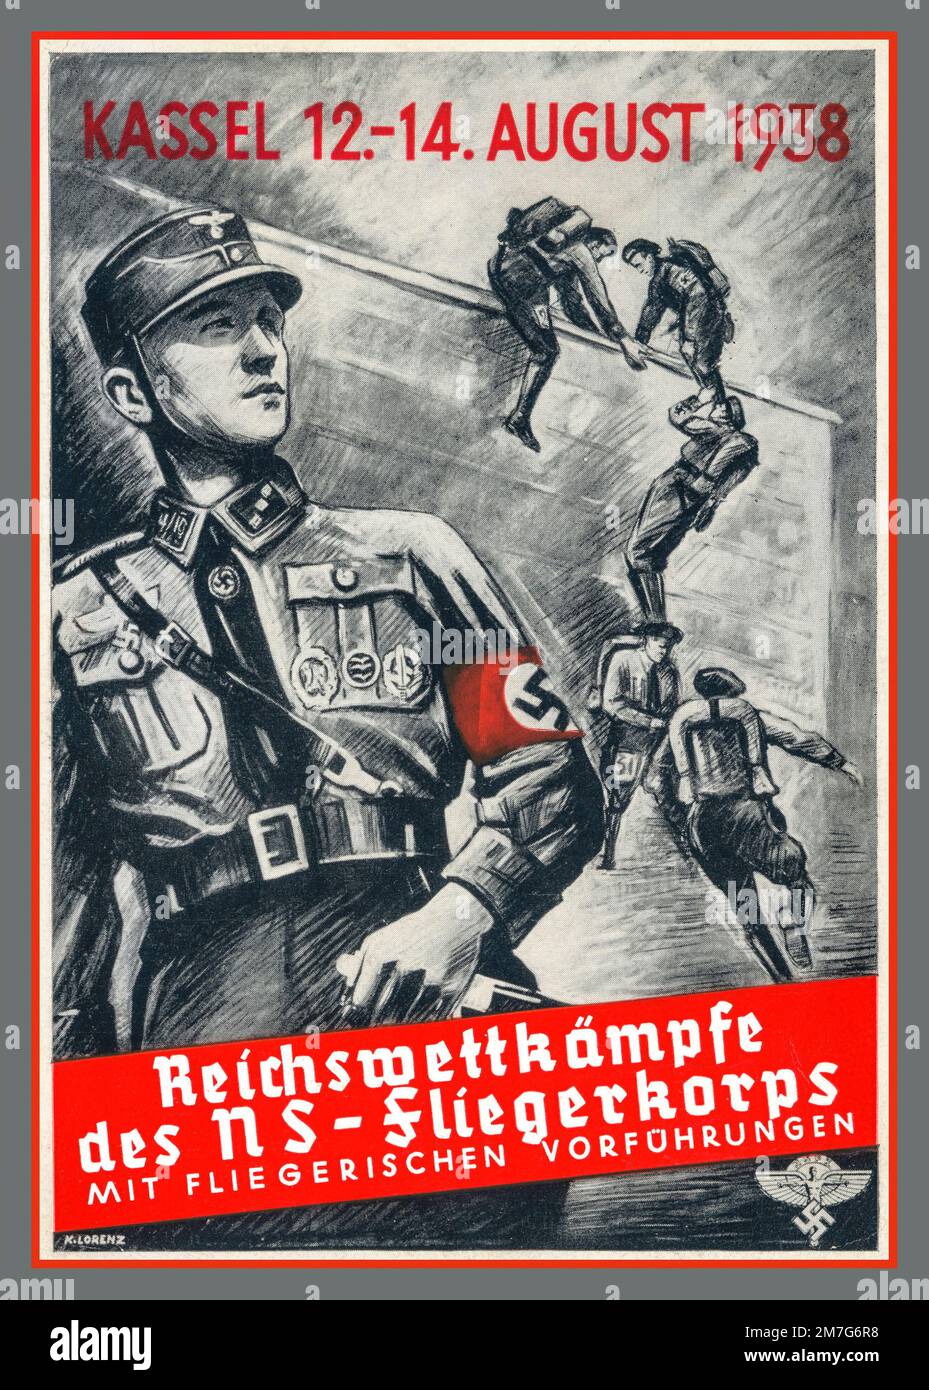 Nazi NS-FLIEGERKORPS Rekrutierung Nazi Poster 1938 Nazi Deutschland 'mitfliegerische Vorfuhrungen' 'mit fliegenden Demonstrationen' 'Empire-Wettbewerbe' Reichswettkämpfe Stockfoto